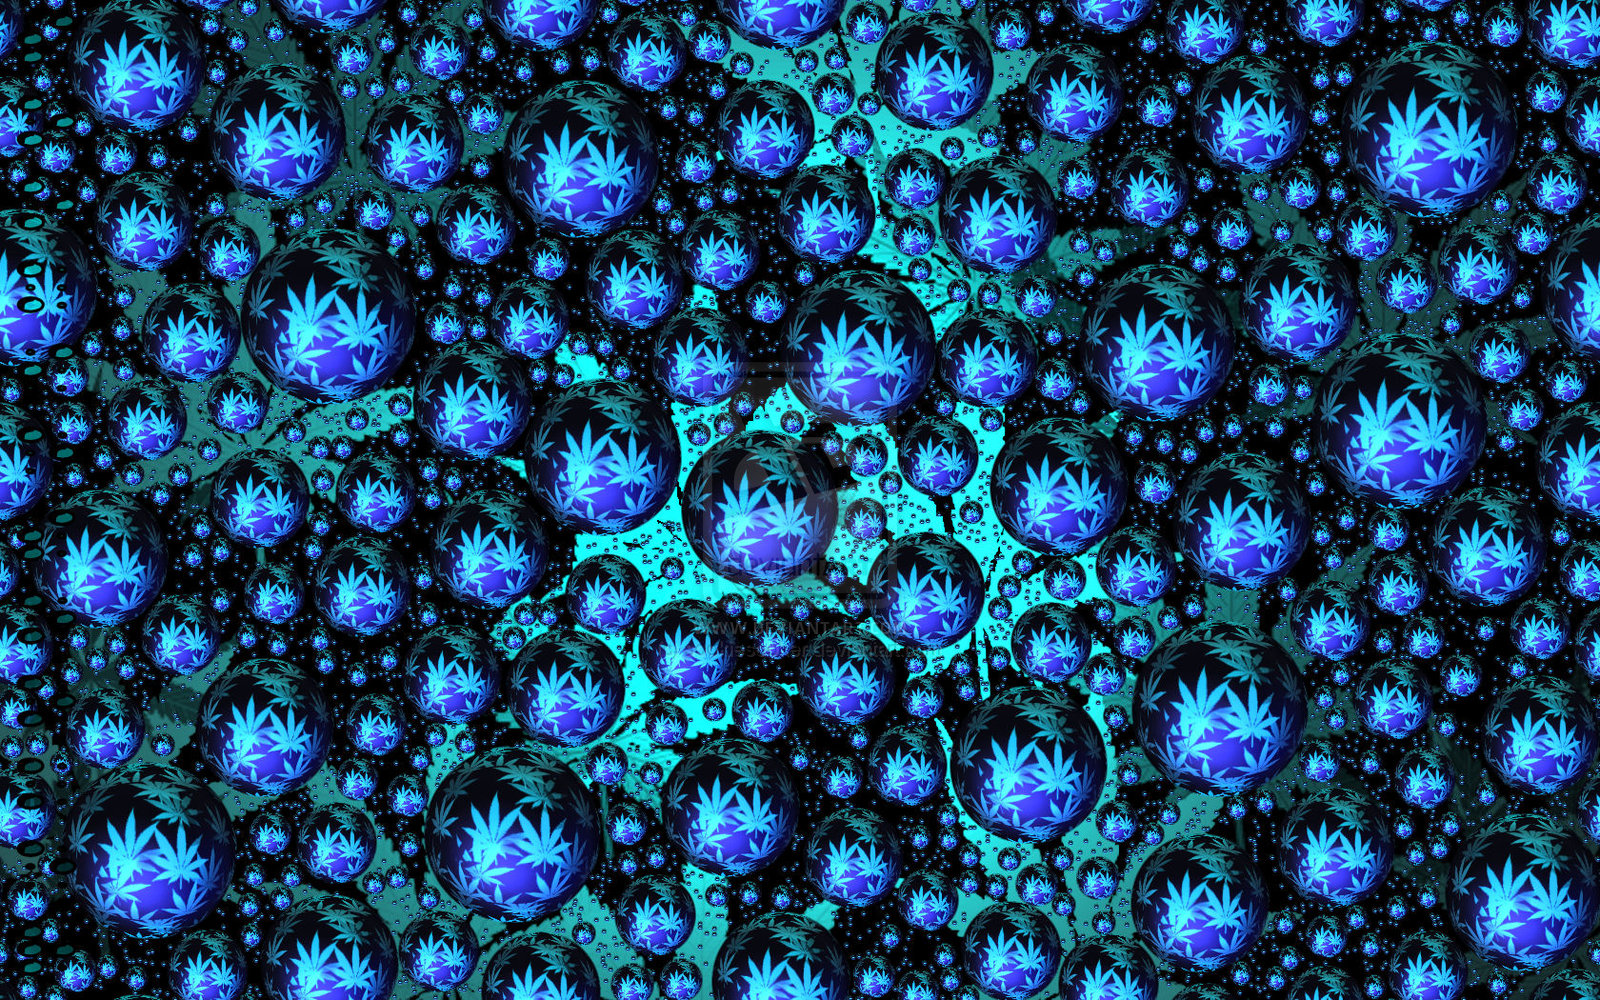 Sookie Cannabis Leaf Wallpaper by sookiesooker on deviantART